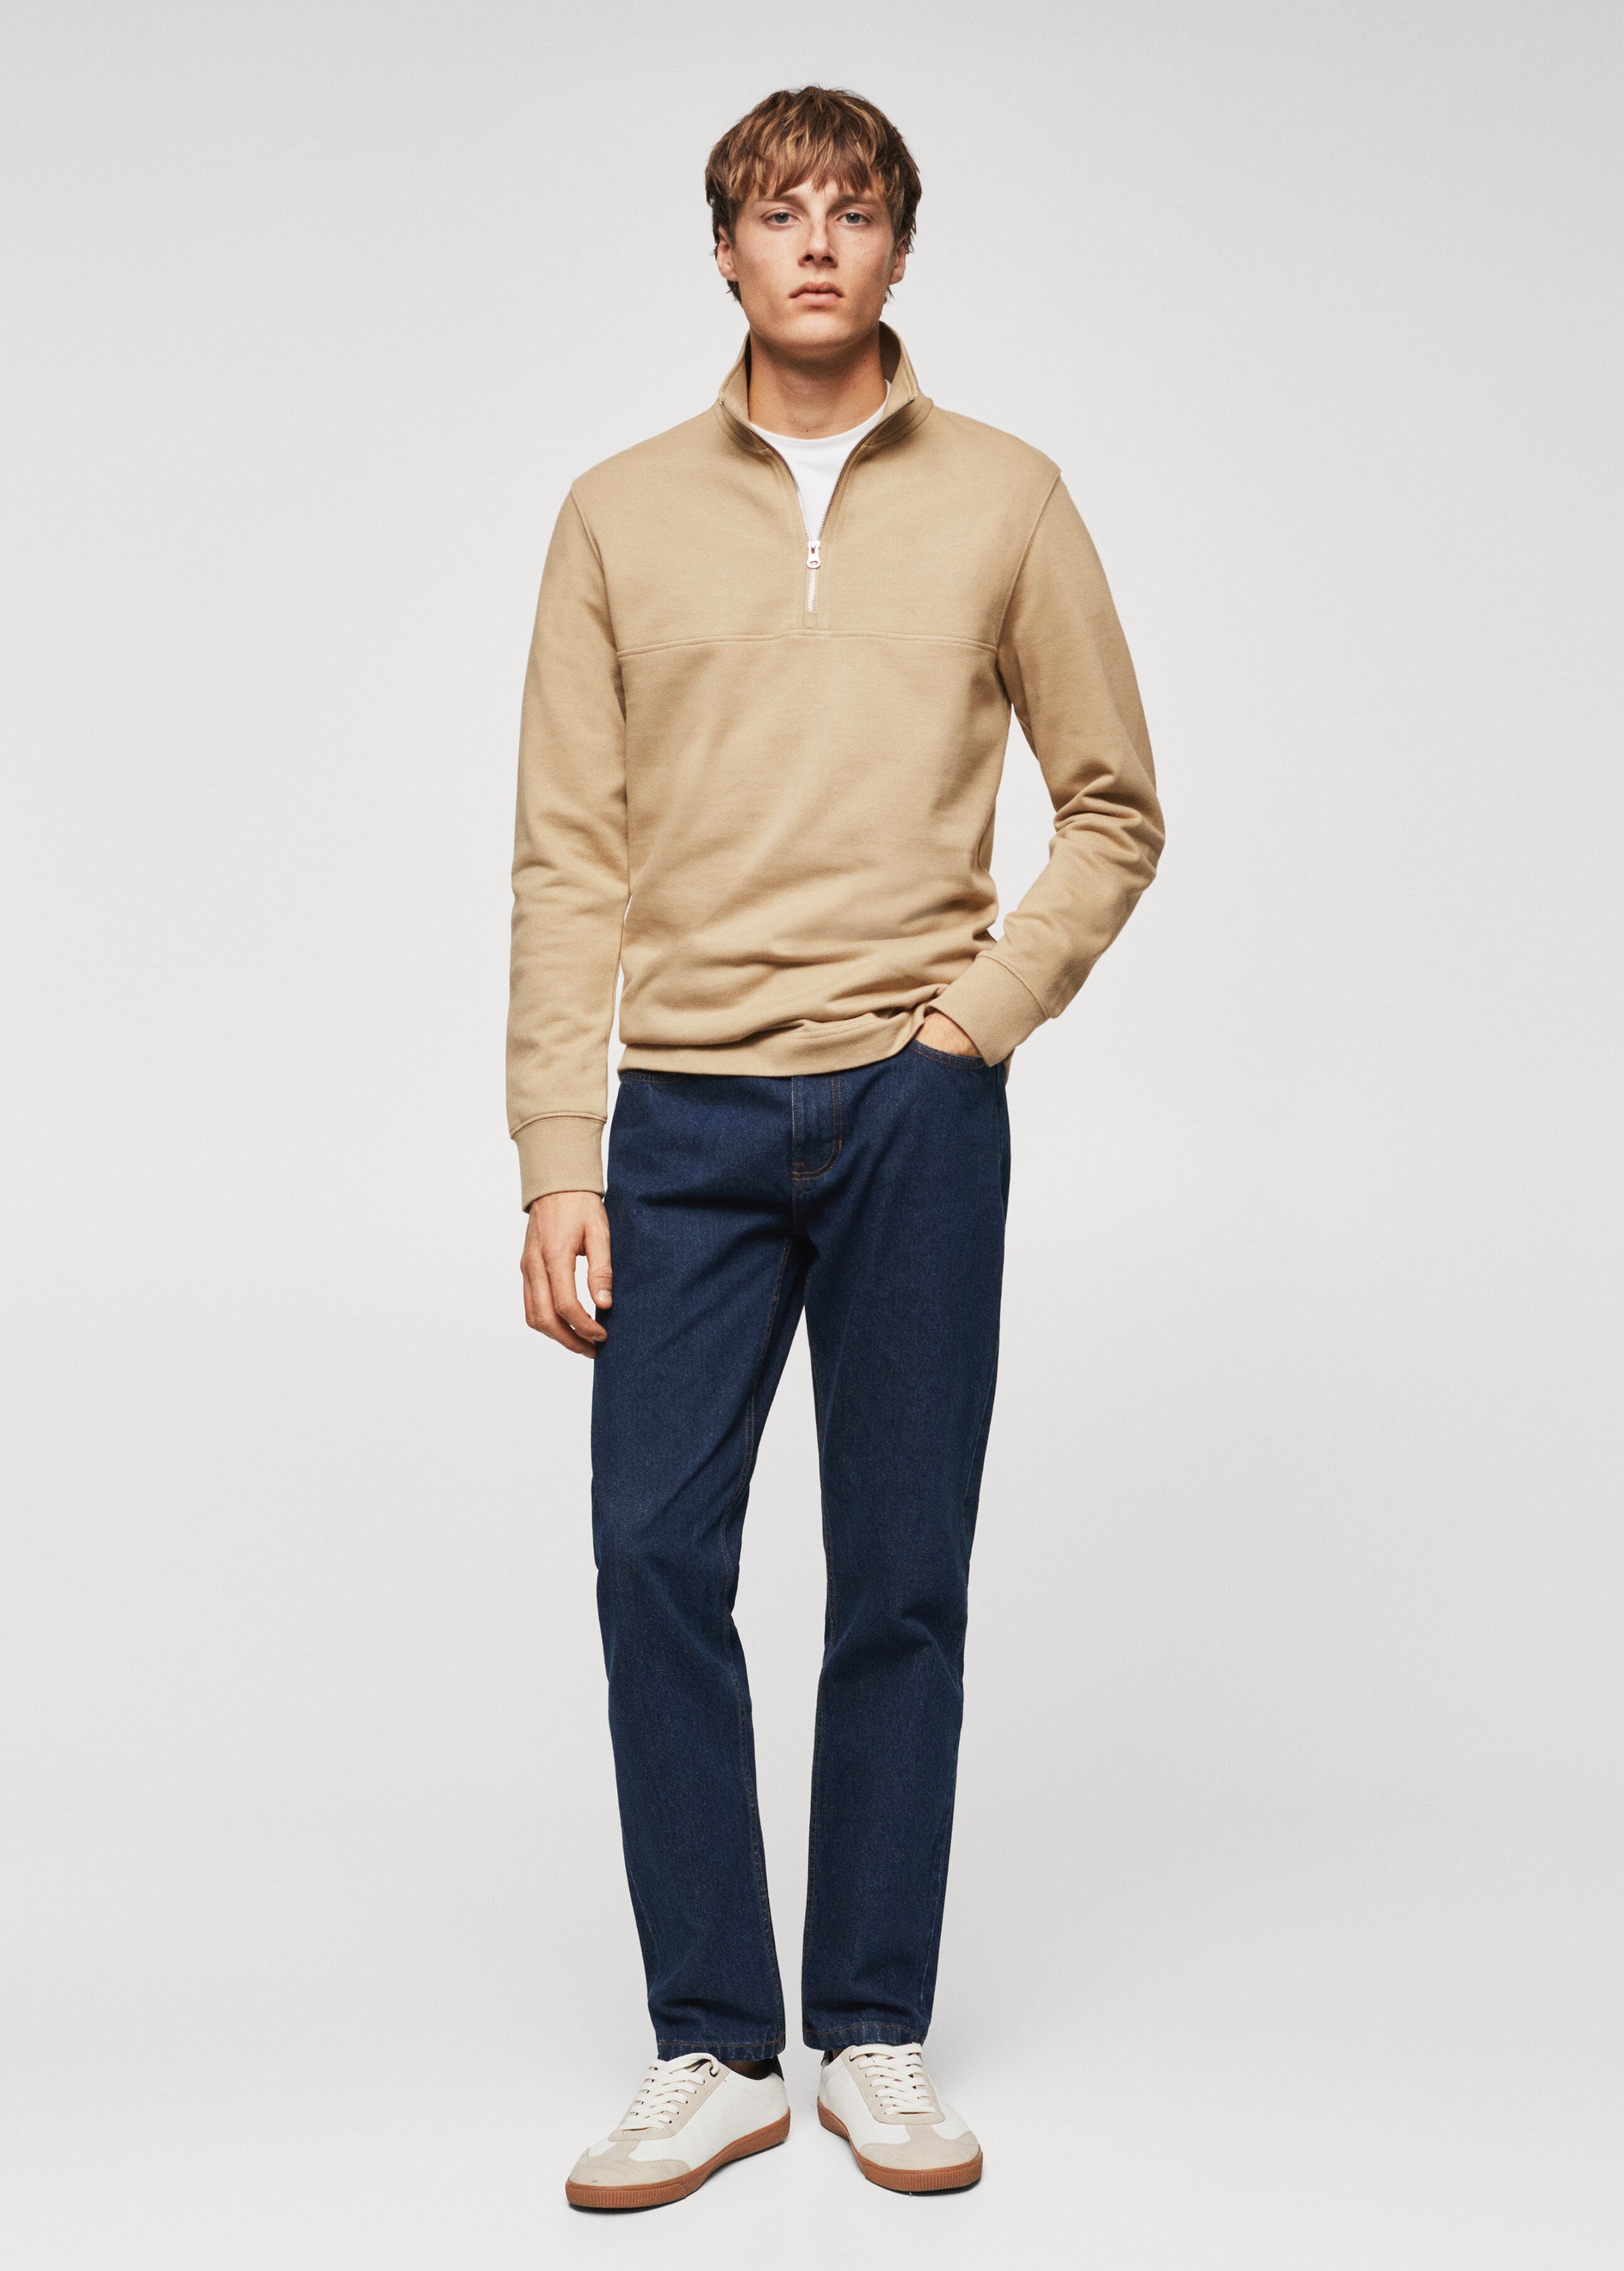 Cotton sweatshirt with zip neck - General plane